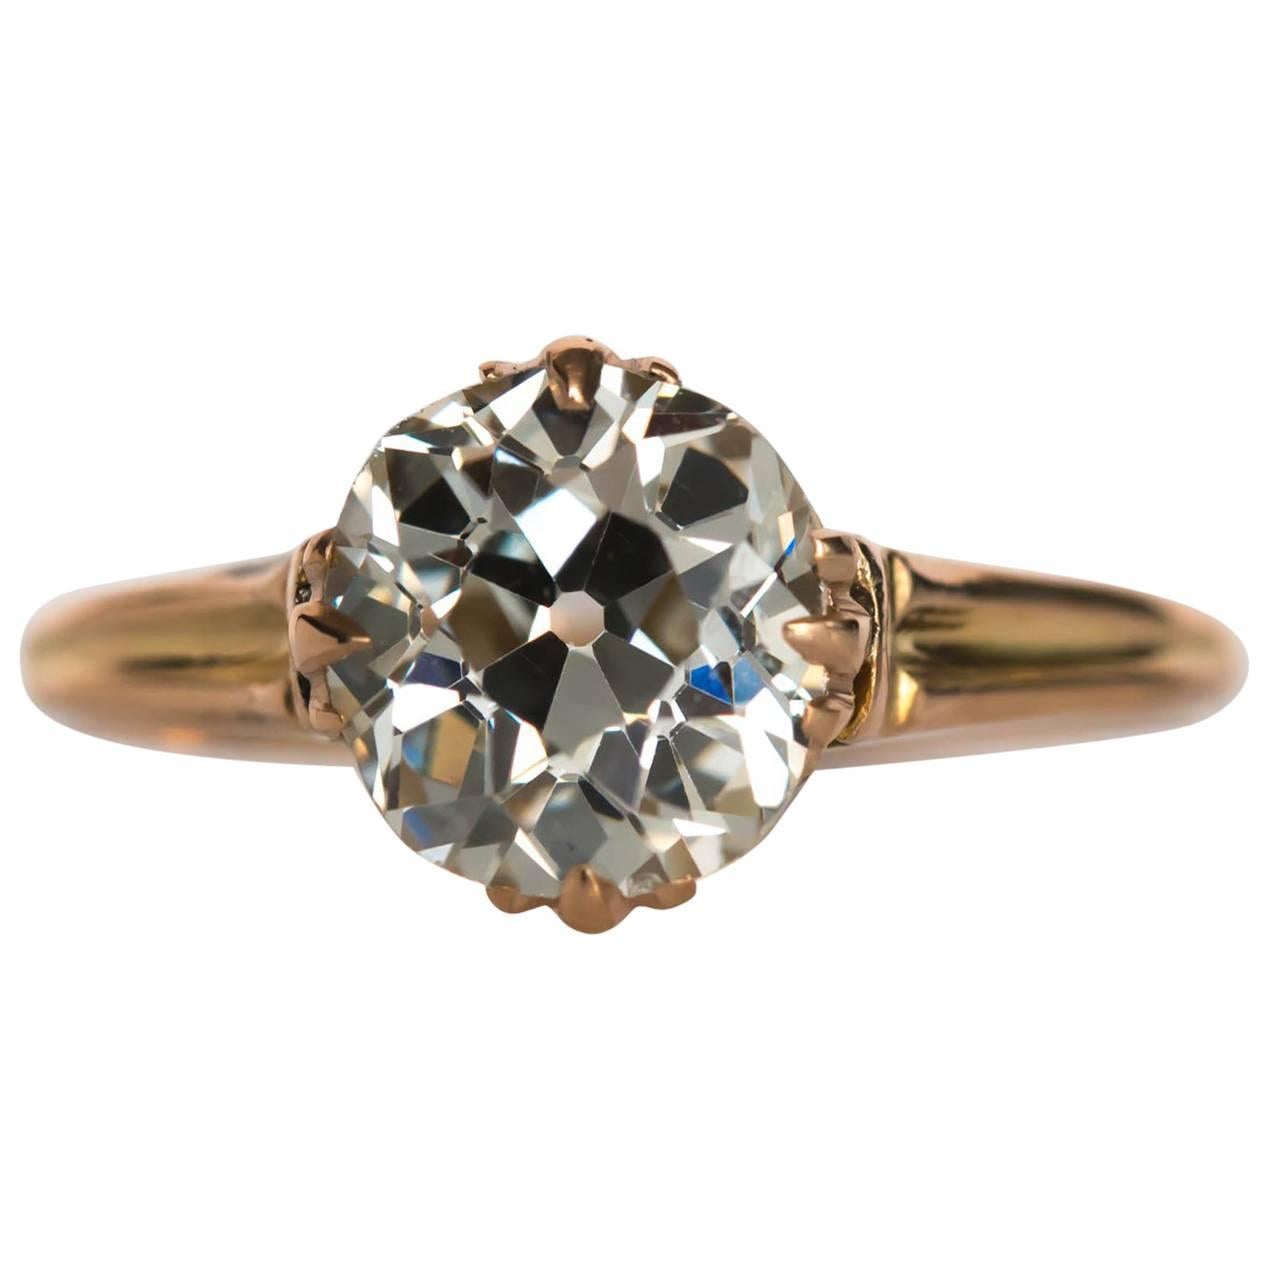 1890s Edwardian Yellow Gold GIA Certified 1.81 Carat Diamond Engagement Ring